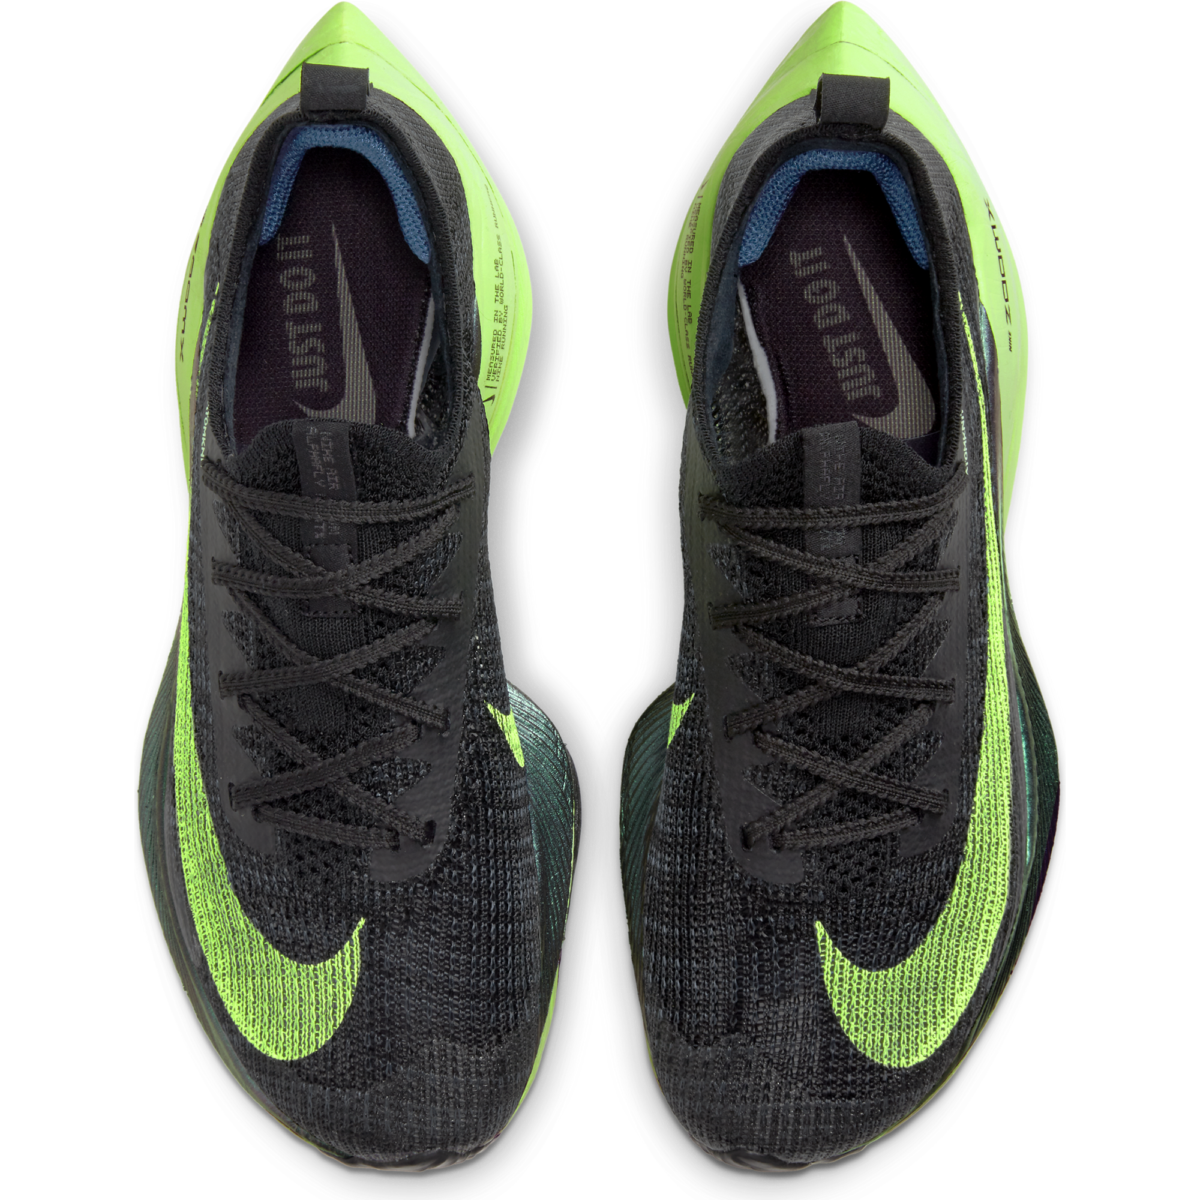 Women's Nike Alphafly Next% CZ1514-400